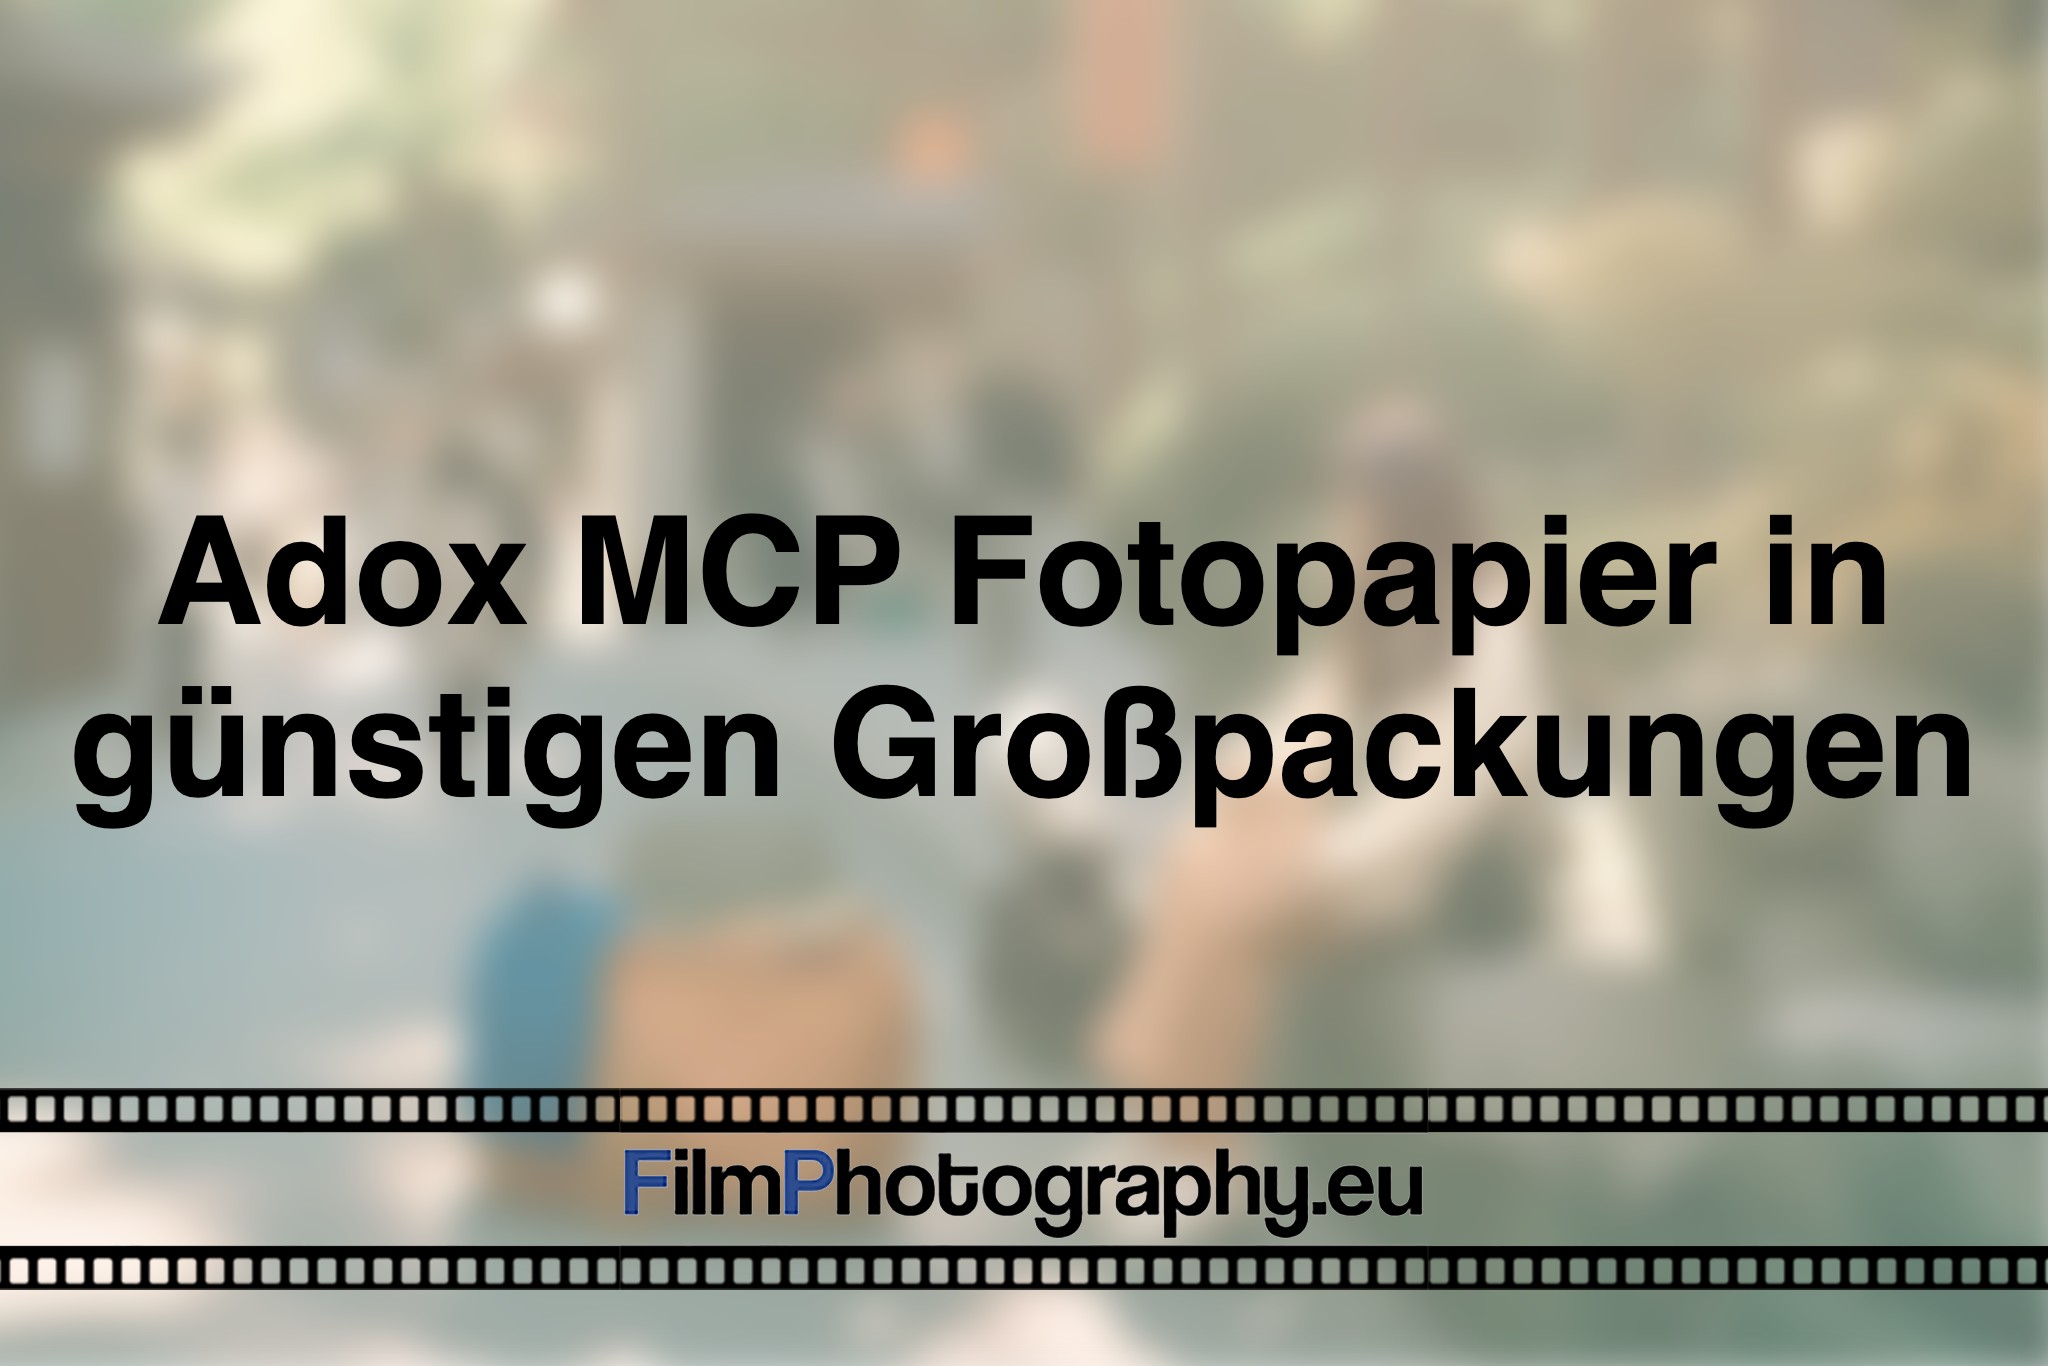 adox-mcp-fotopapier-in-guenstigen-großpackungen-photo-bnv